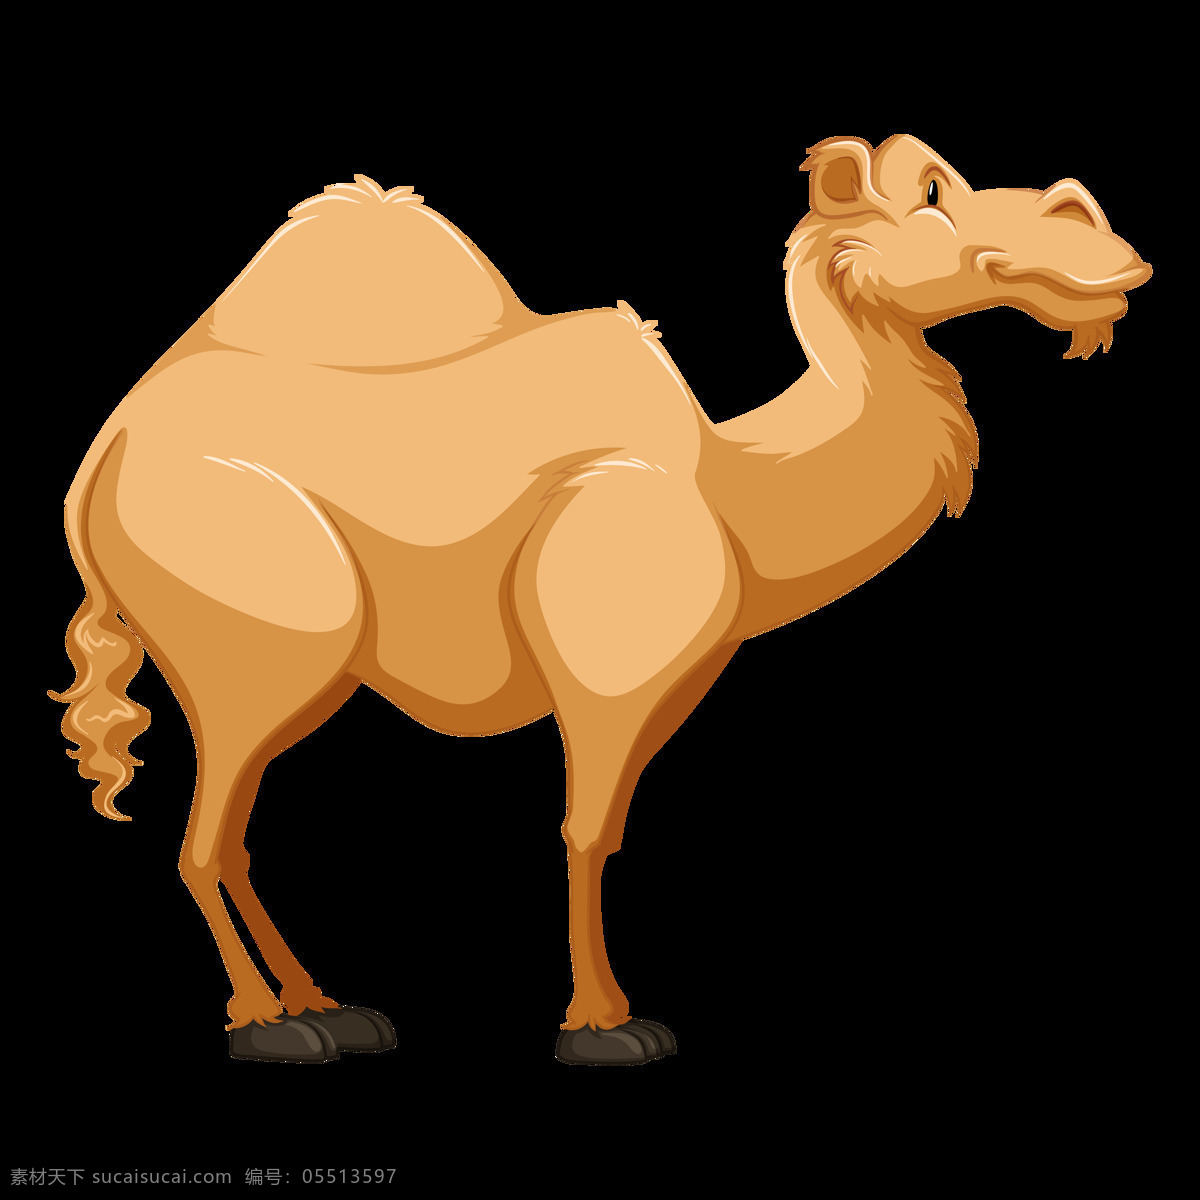 透明底骆驼 骆驼图片 卡通骆驼 png图